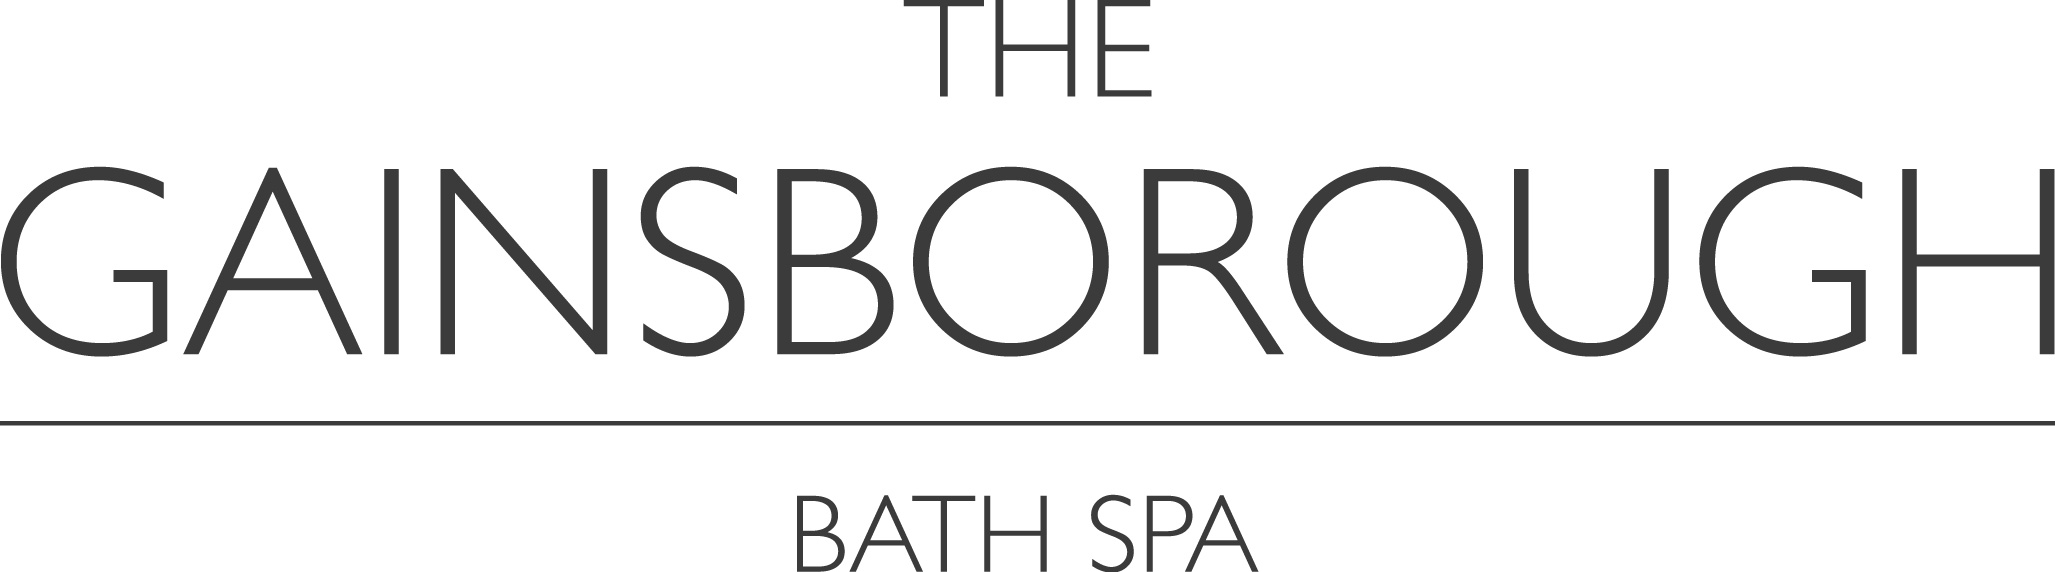 The-Gainsborough-Bath-Spa-logo